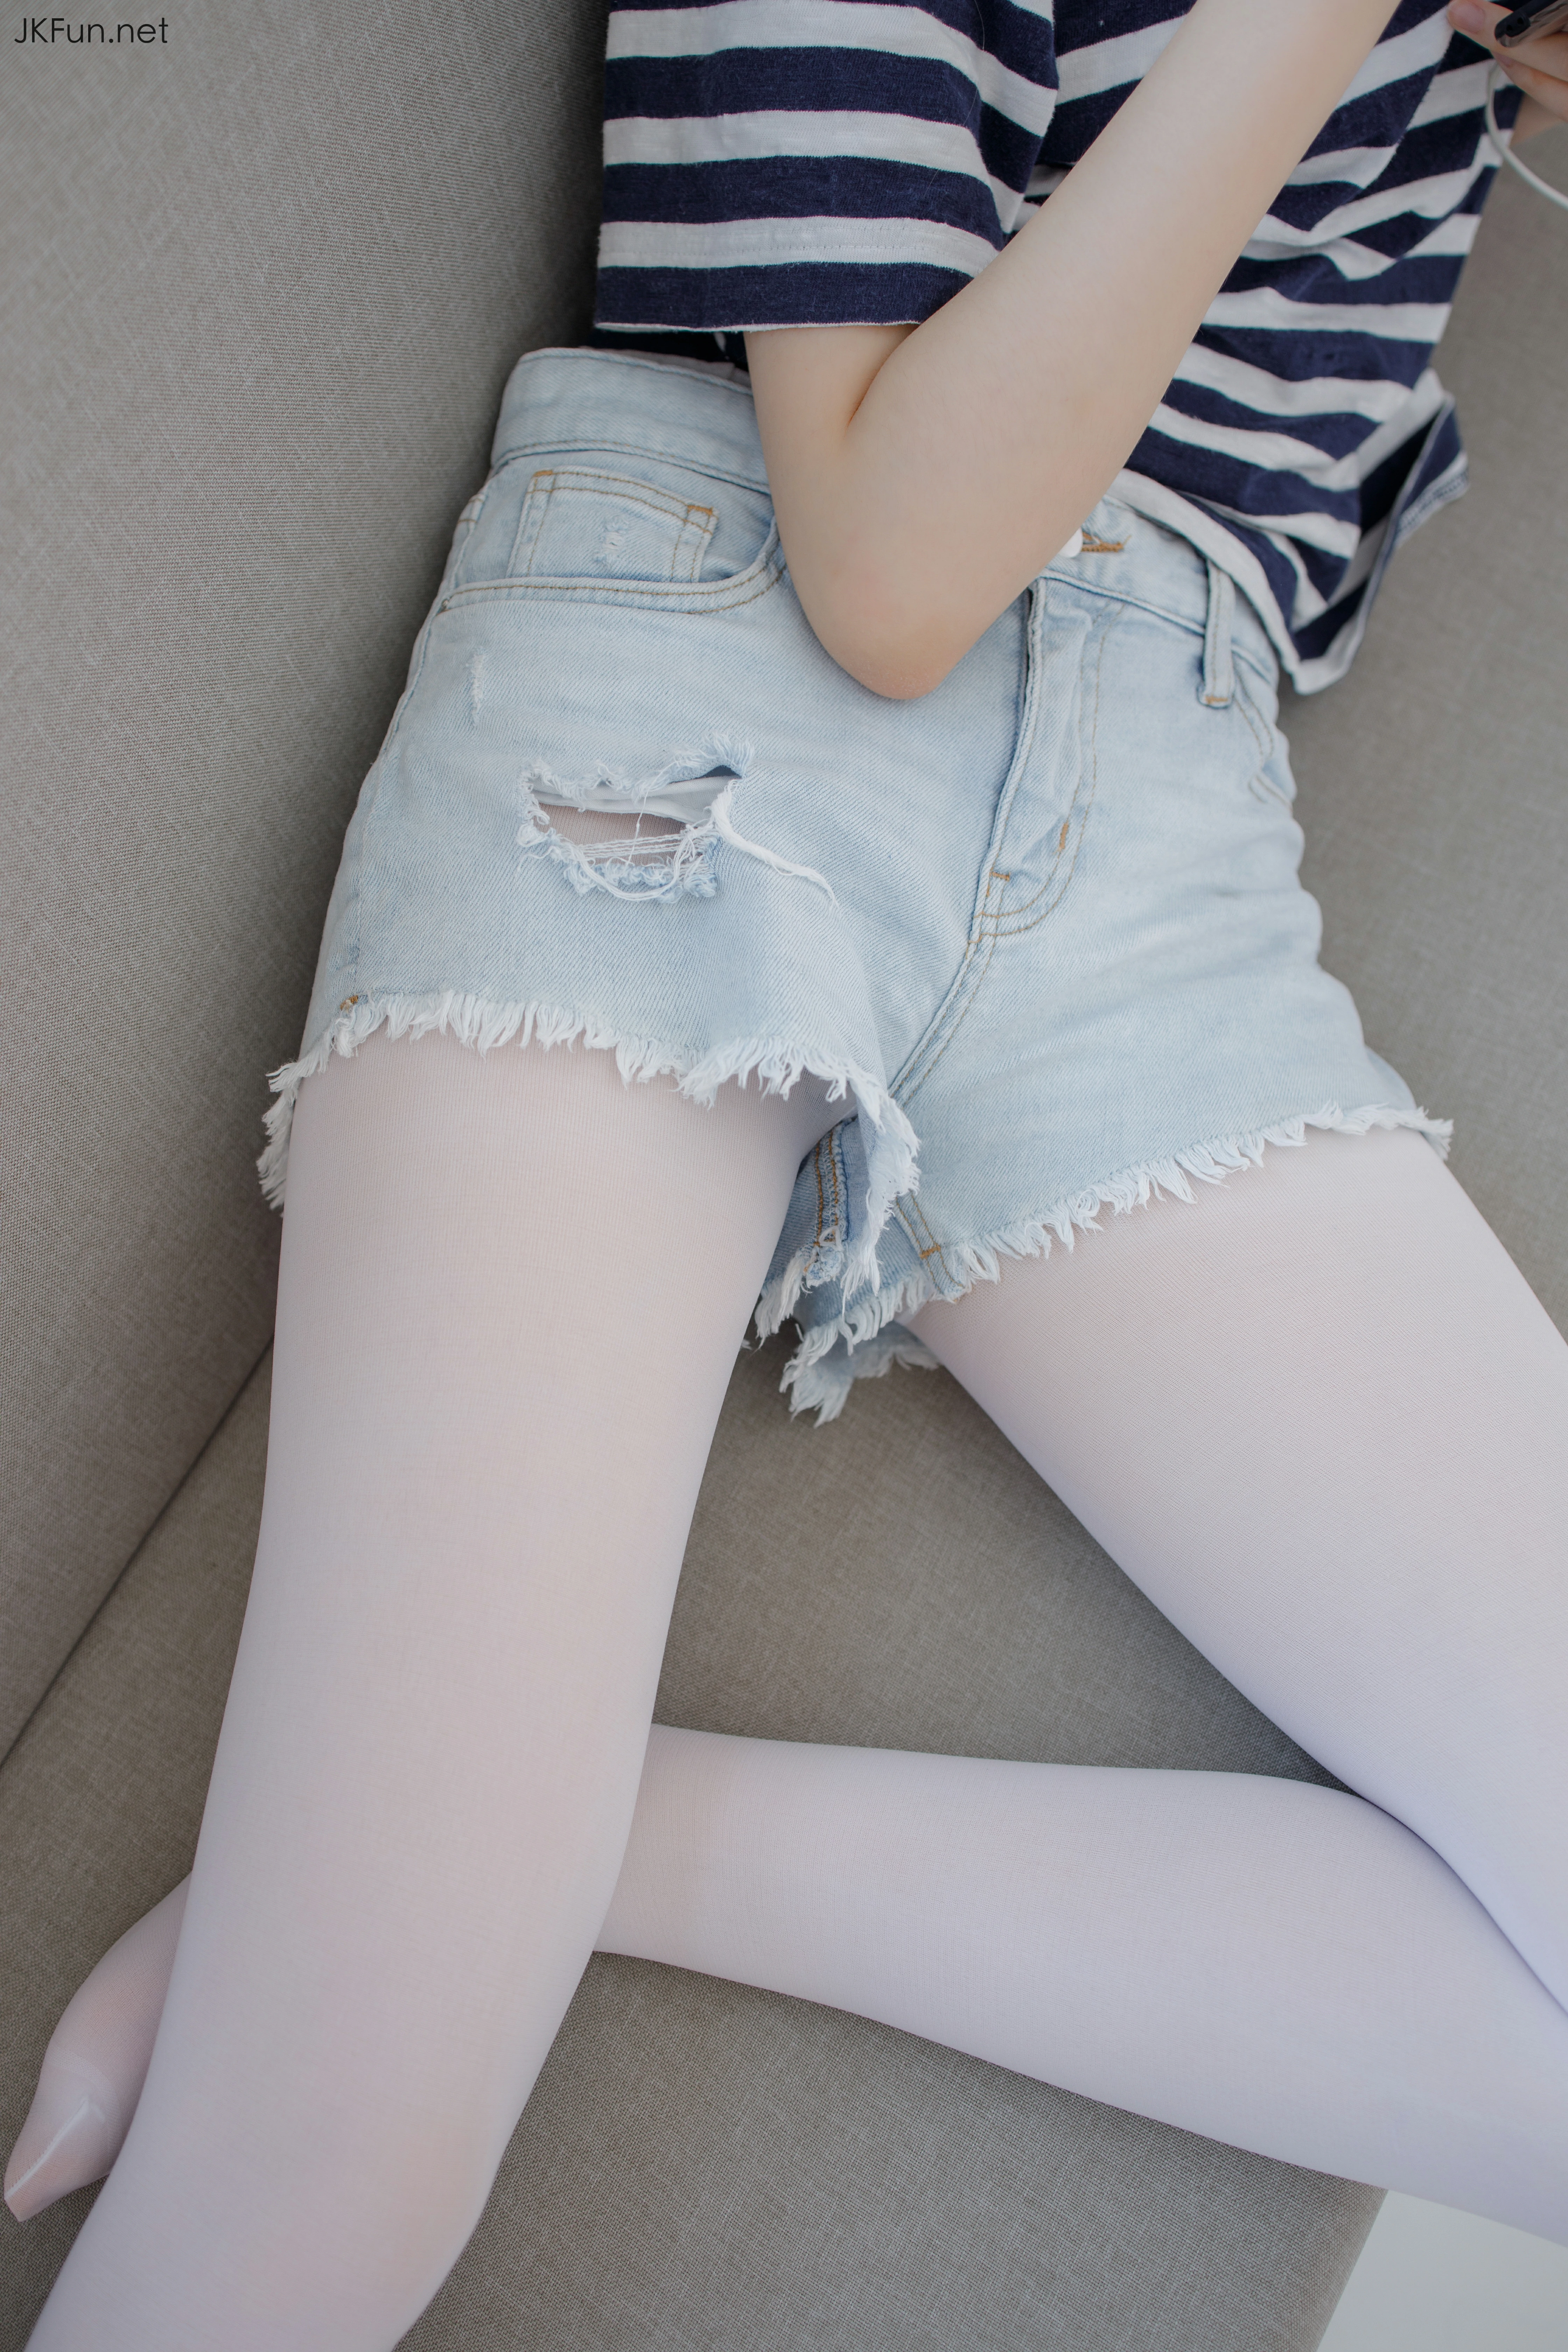 [森萝财团]JKFUN-020 80D白丝 Aika 蓝白短袖与牛仔热裤加白色丝袜美腿玉足性感私房写真集,